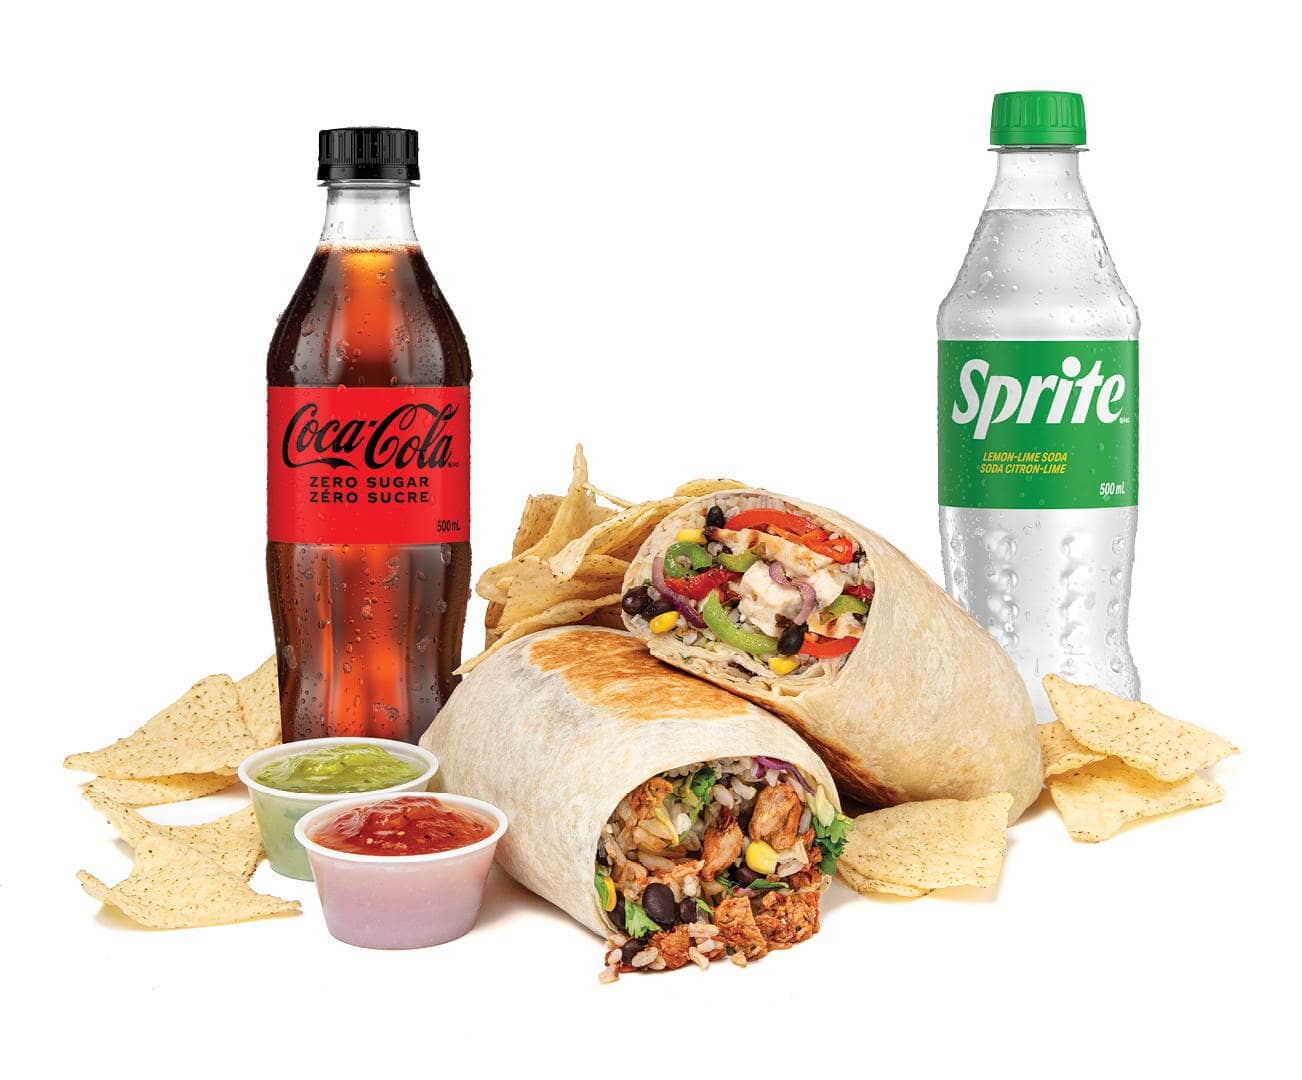 Burritos, bouteilles de Coca-Cola et de Sprite, chips et salsa